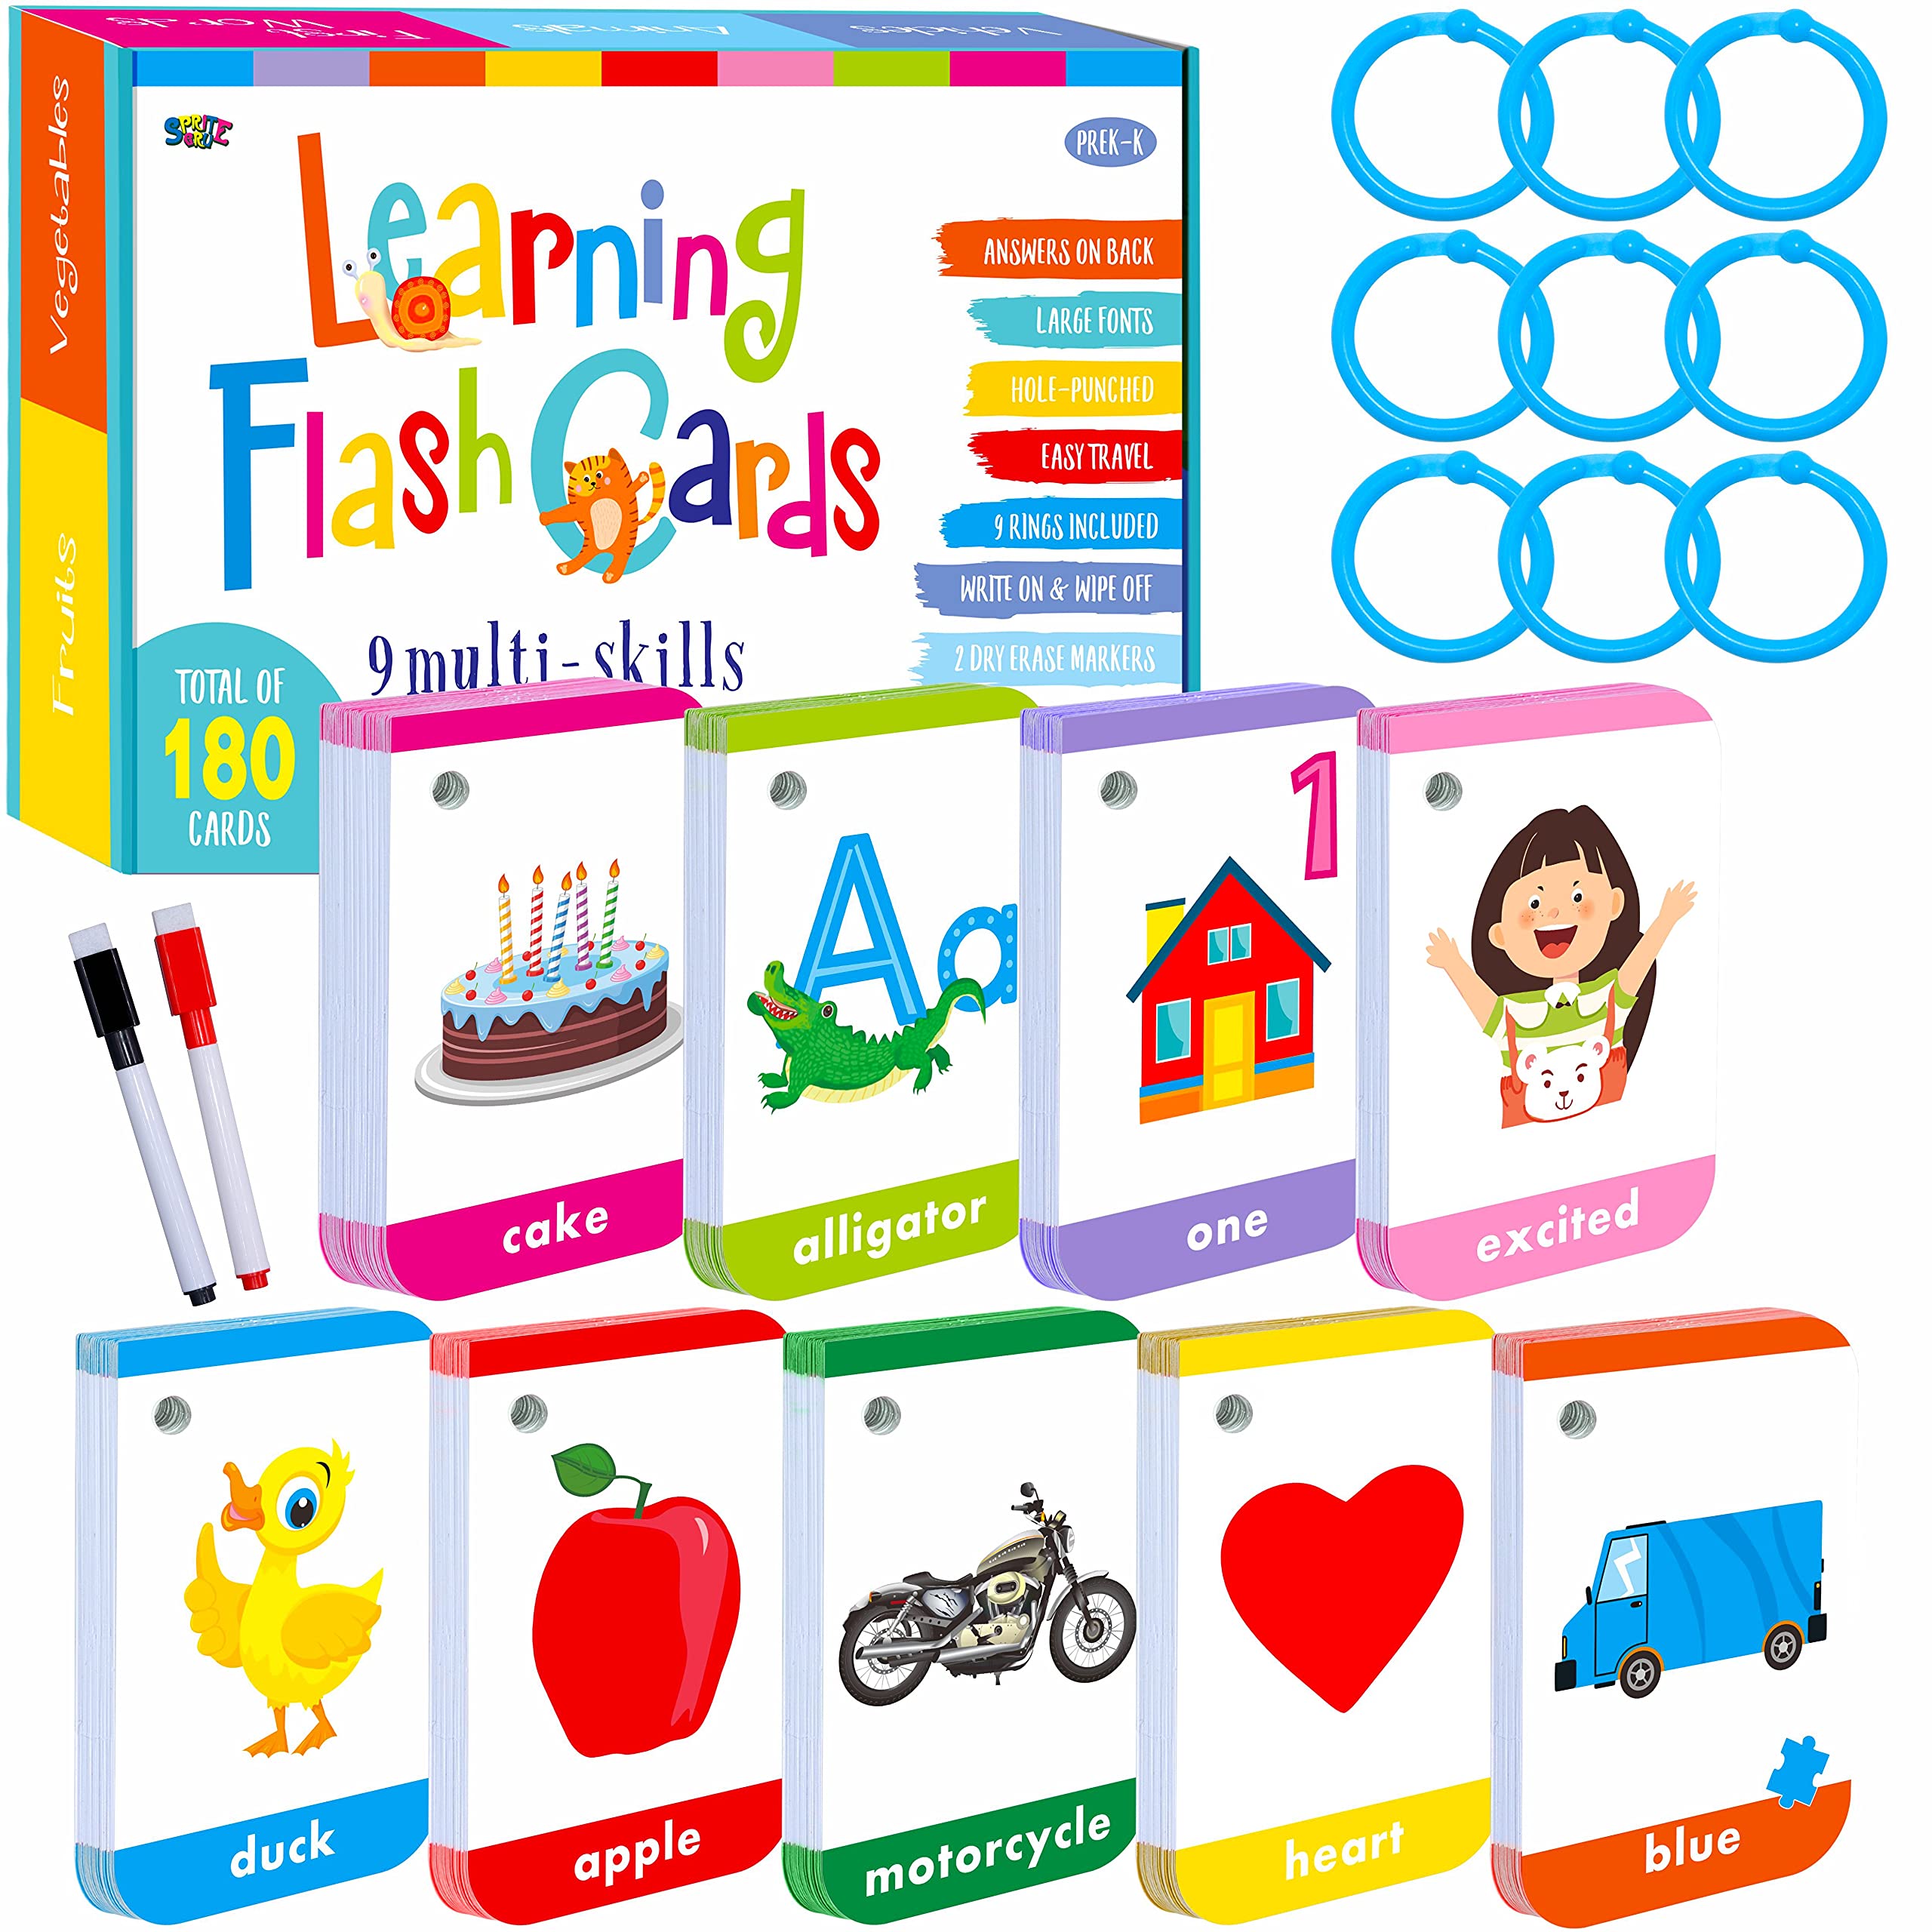 English Learning Flashcards